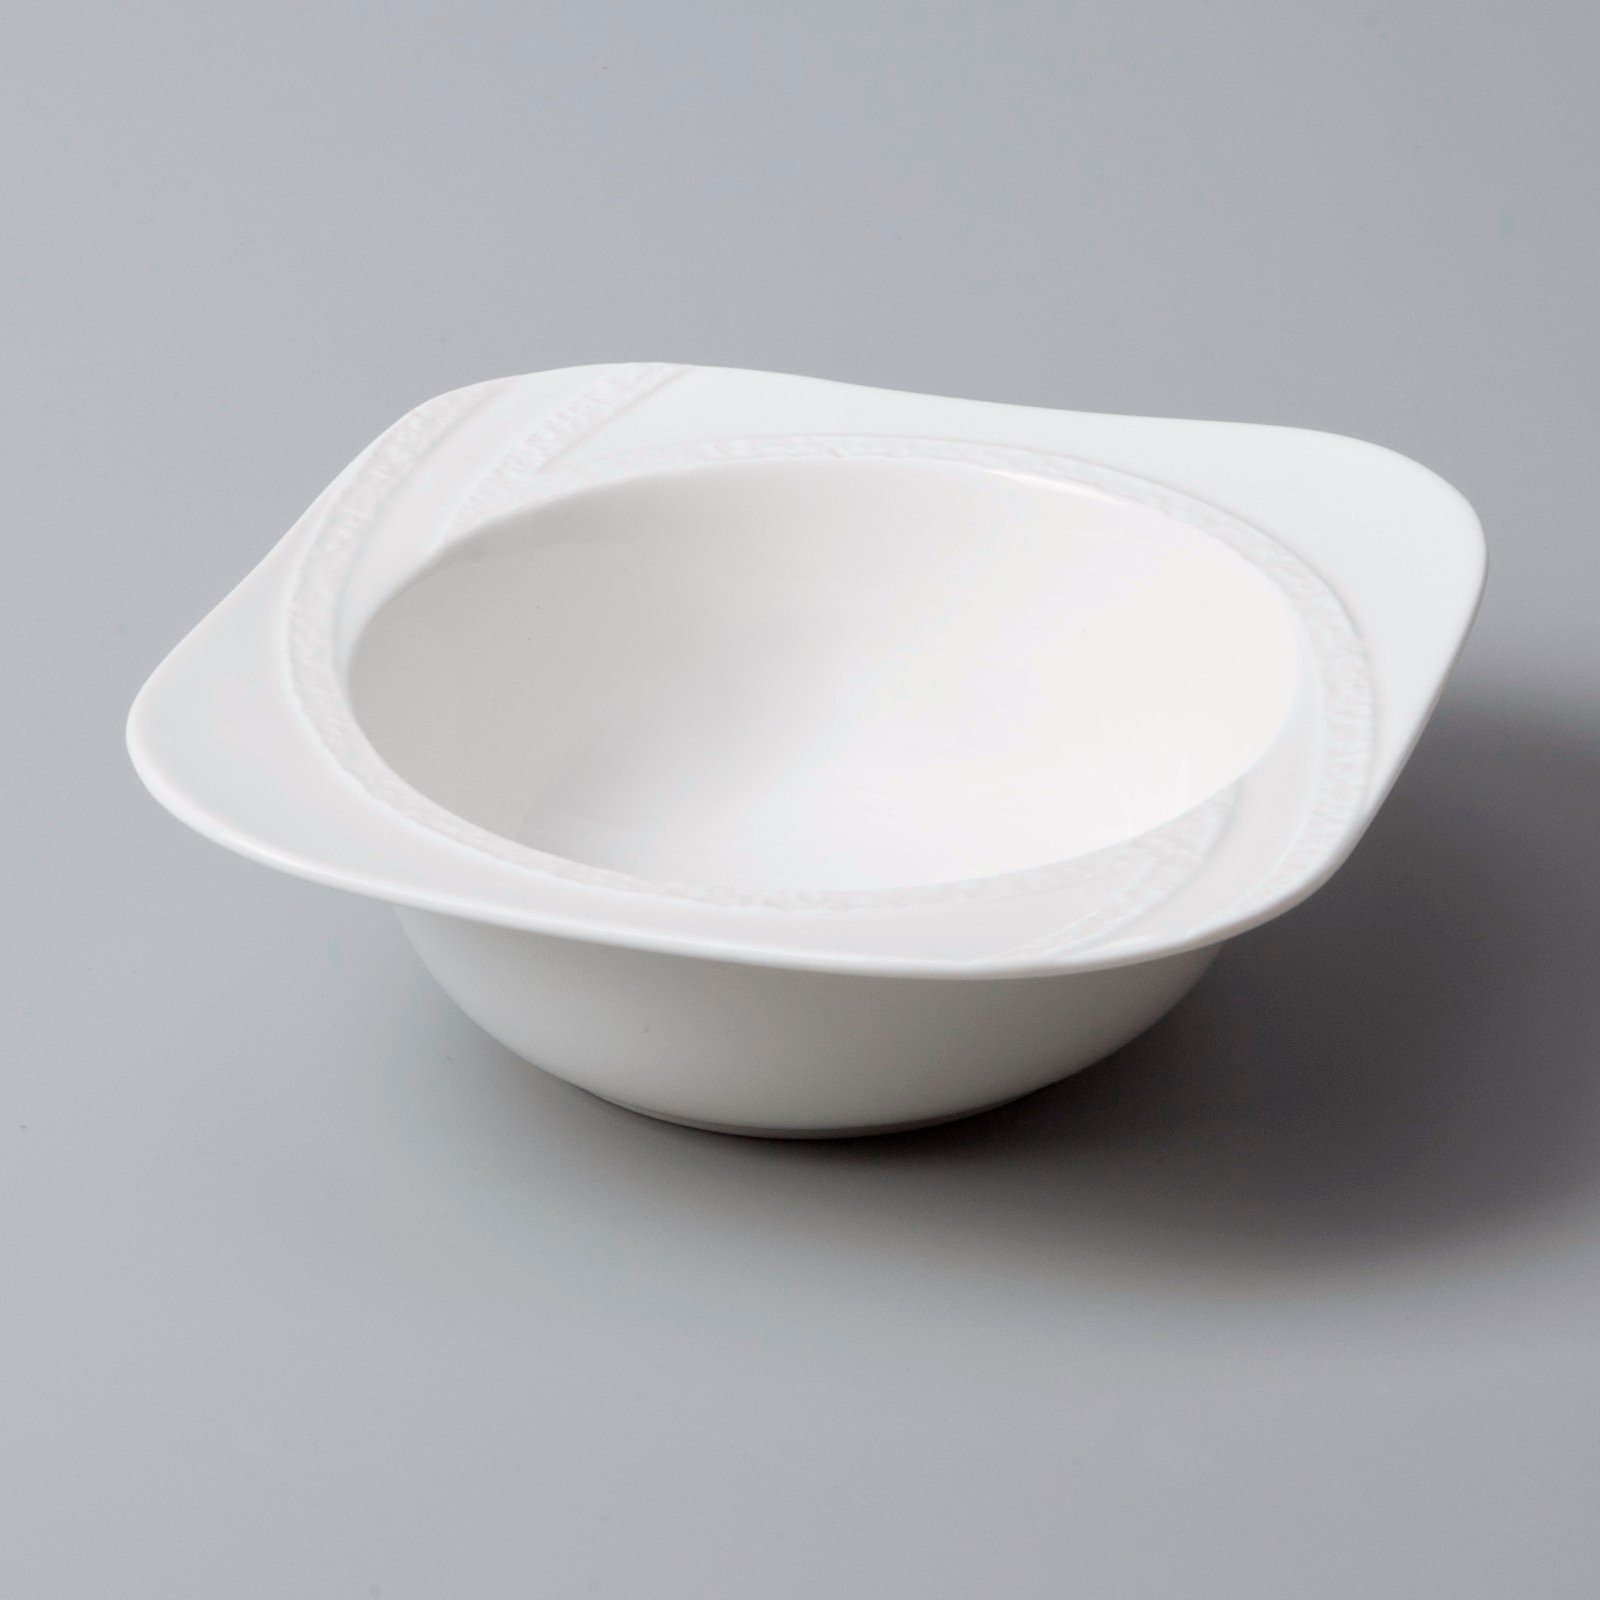 white porcelain tableware wang white dinner sets restaurant